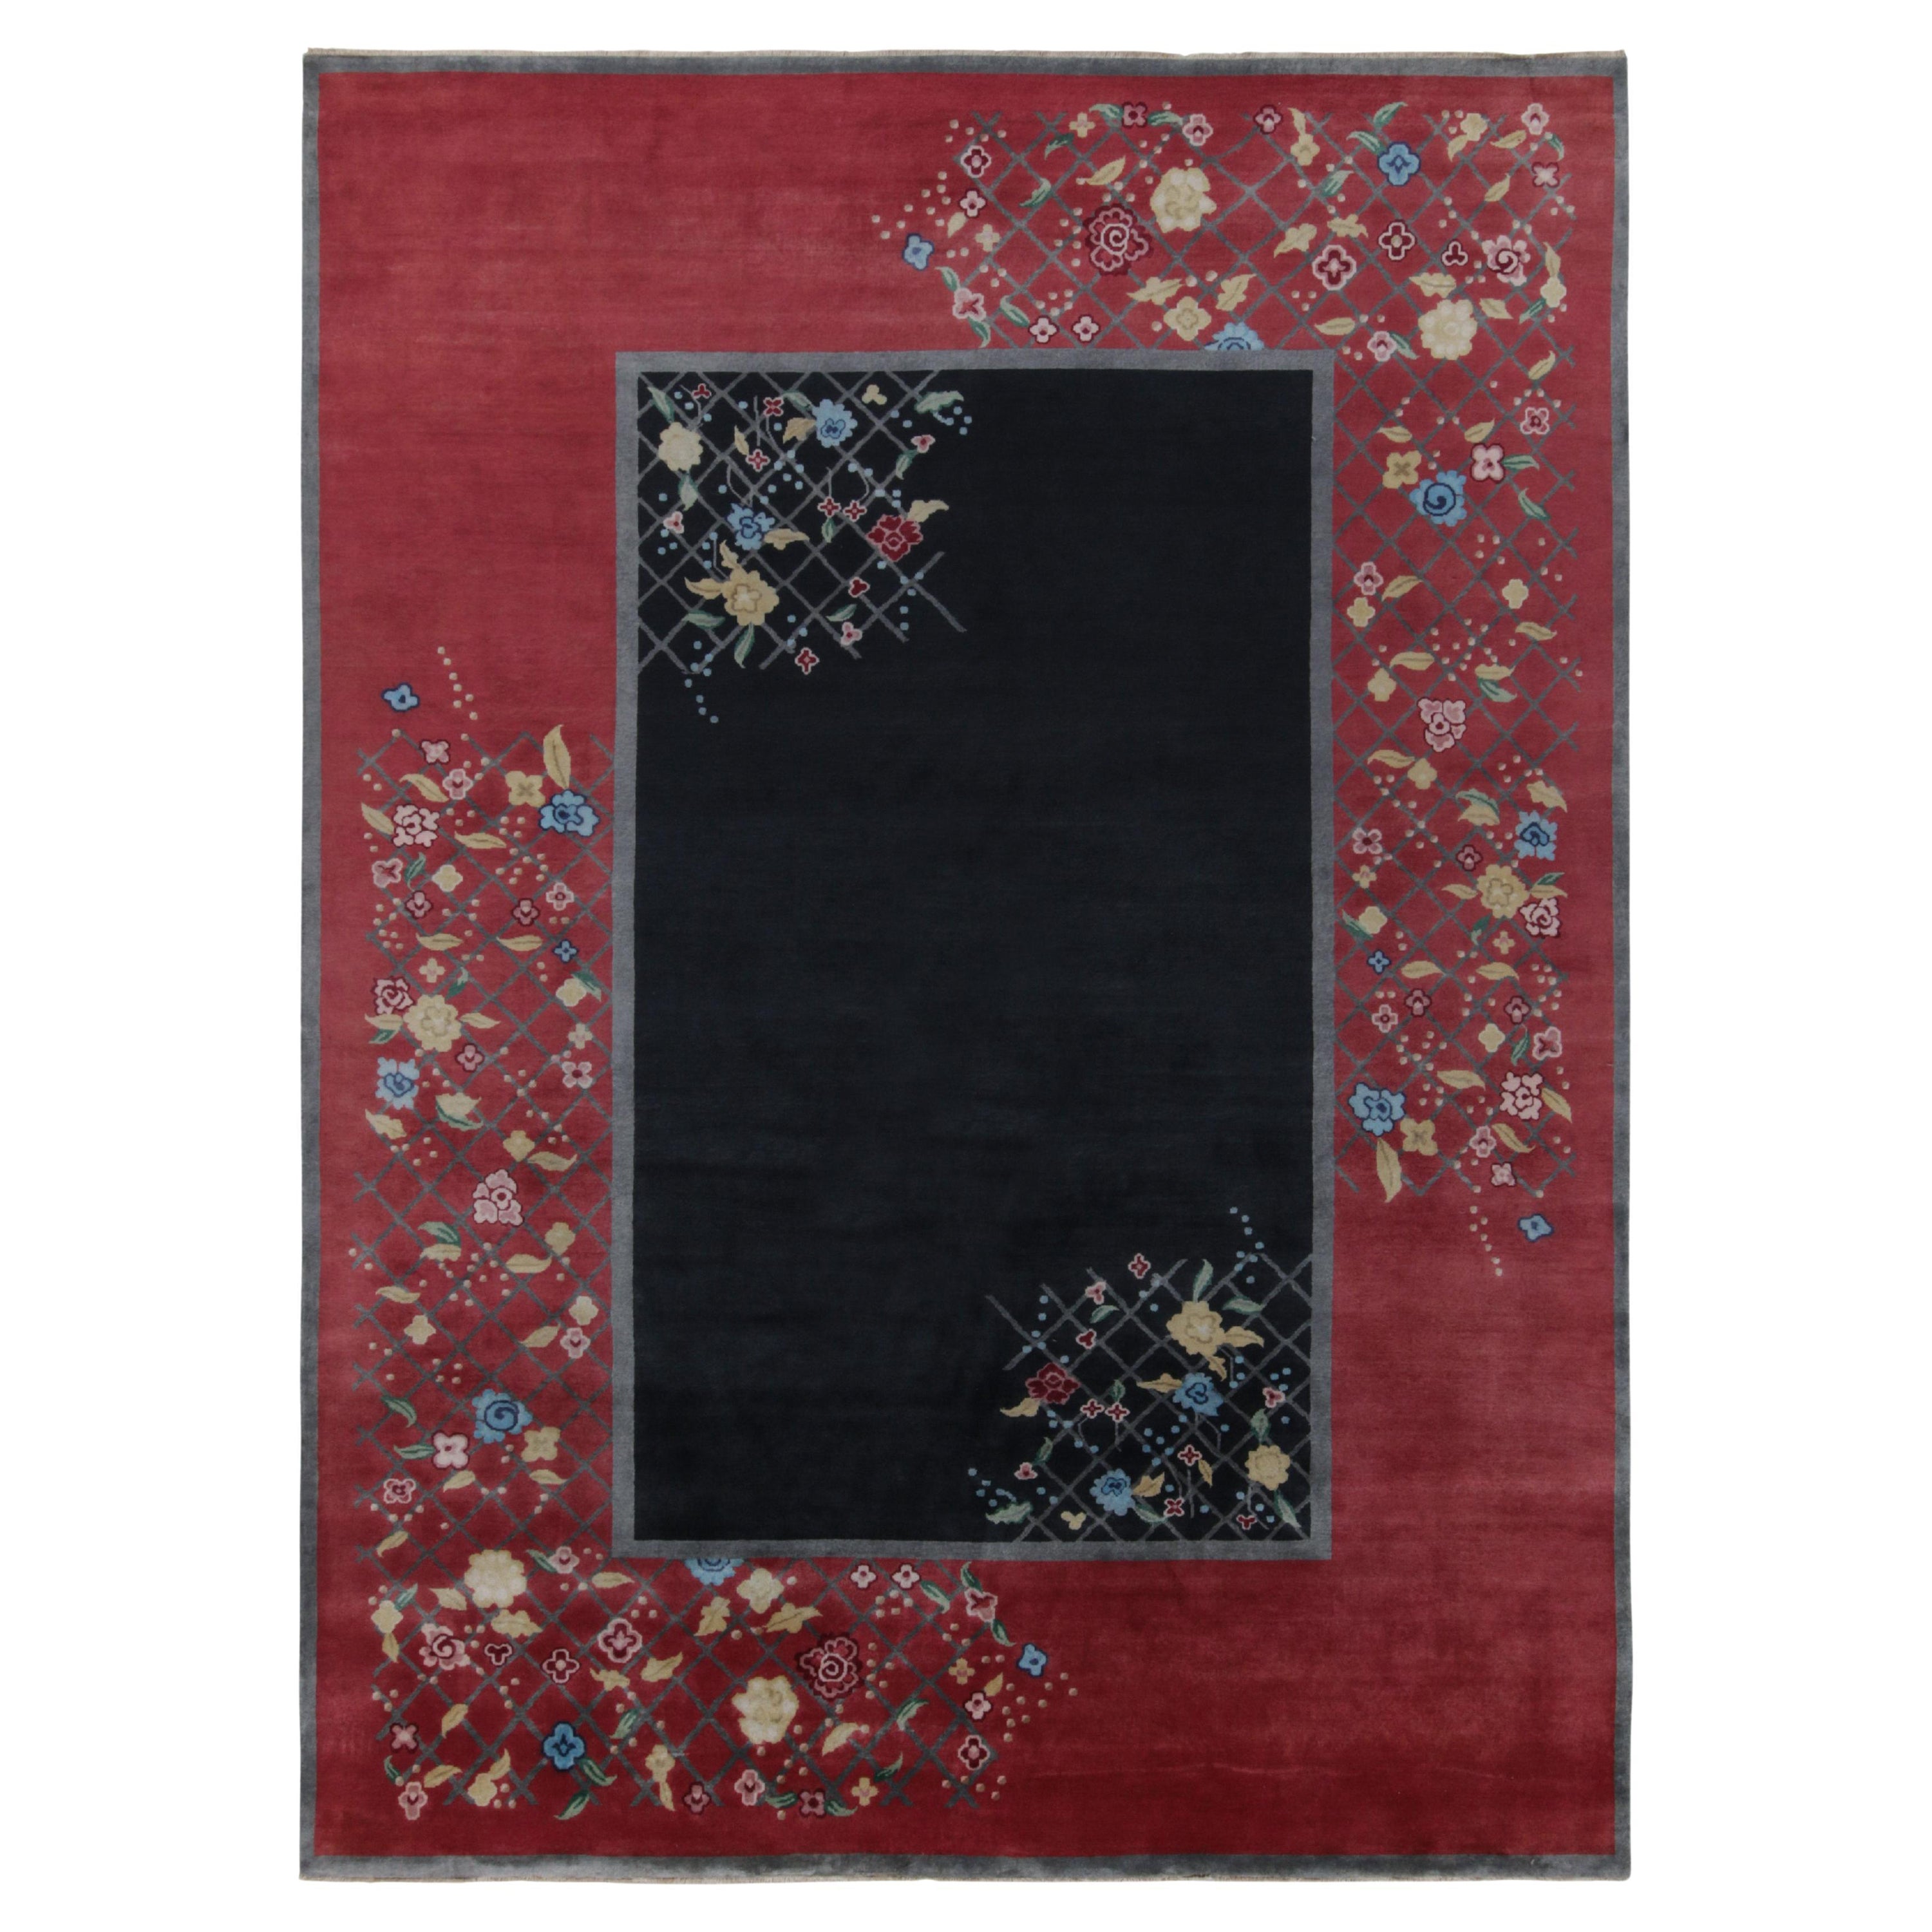 Chinesischer Deko-Teppich von Rug & Kilim in Schwarz und Rot mit bunten Blumenmotiven